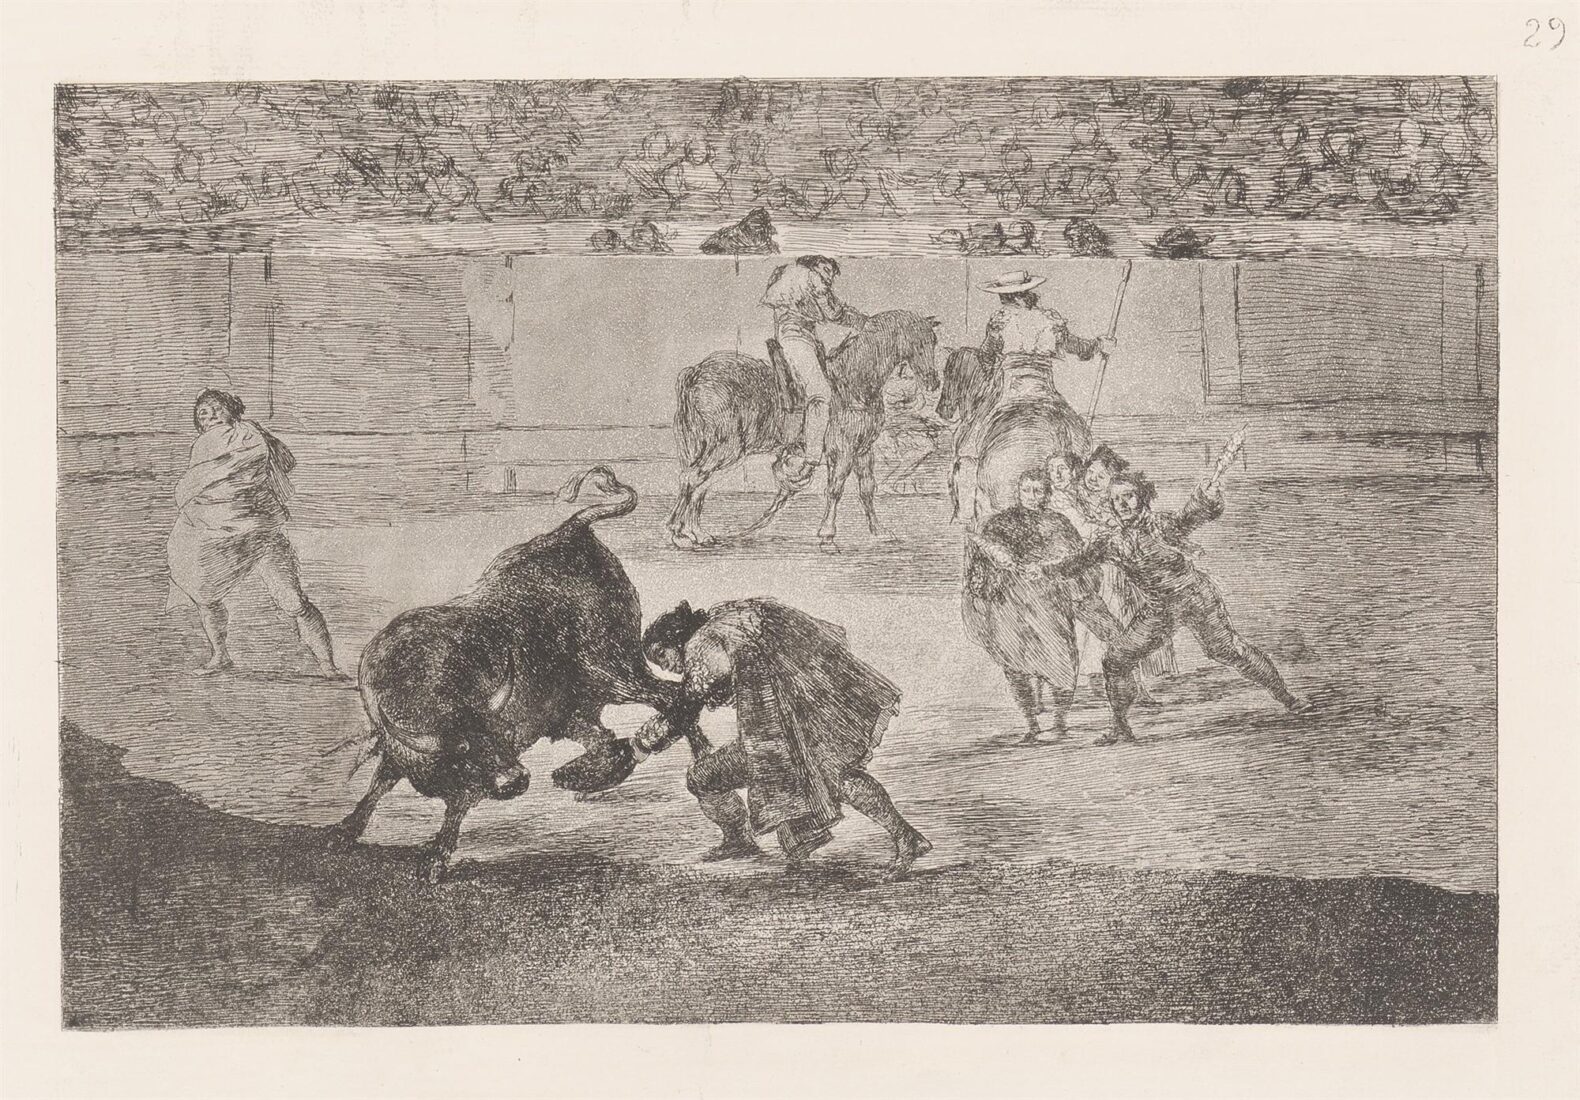 Pepe Illo making the pass of the ‘recorte’. (Pepe Illo haciendo el recorte al toro) - Goya y Lucientes Francisco